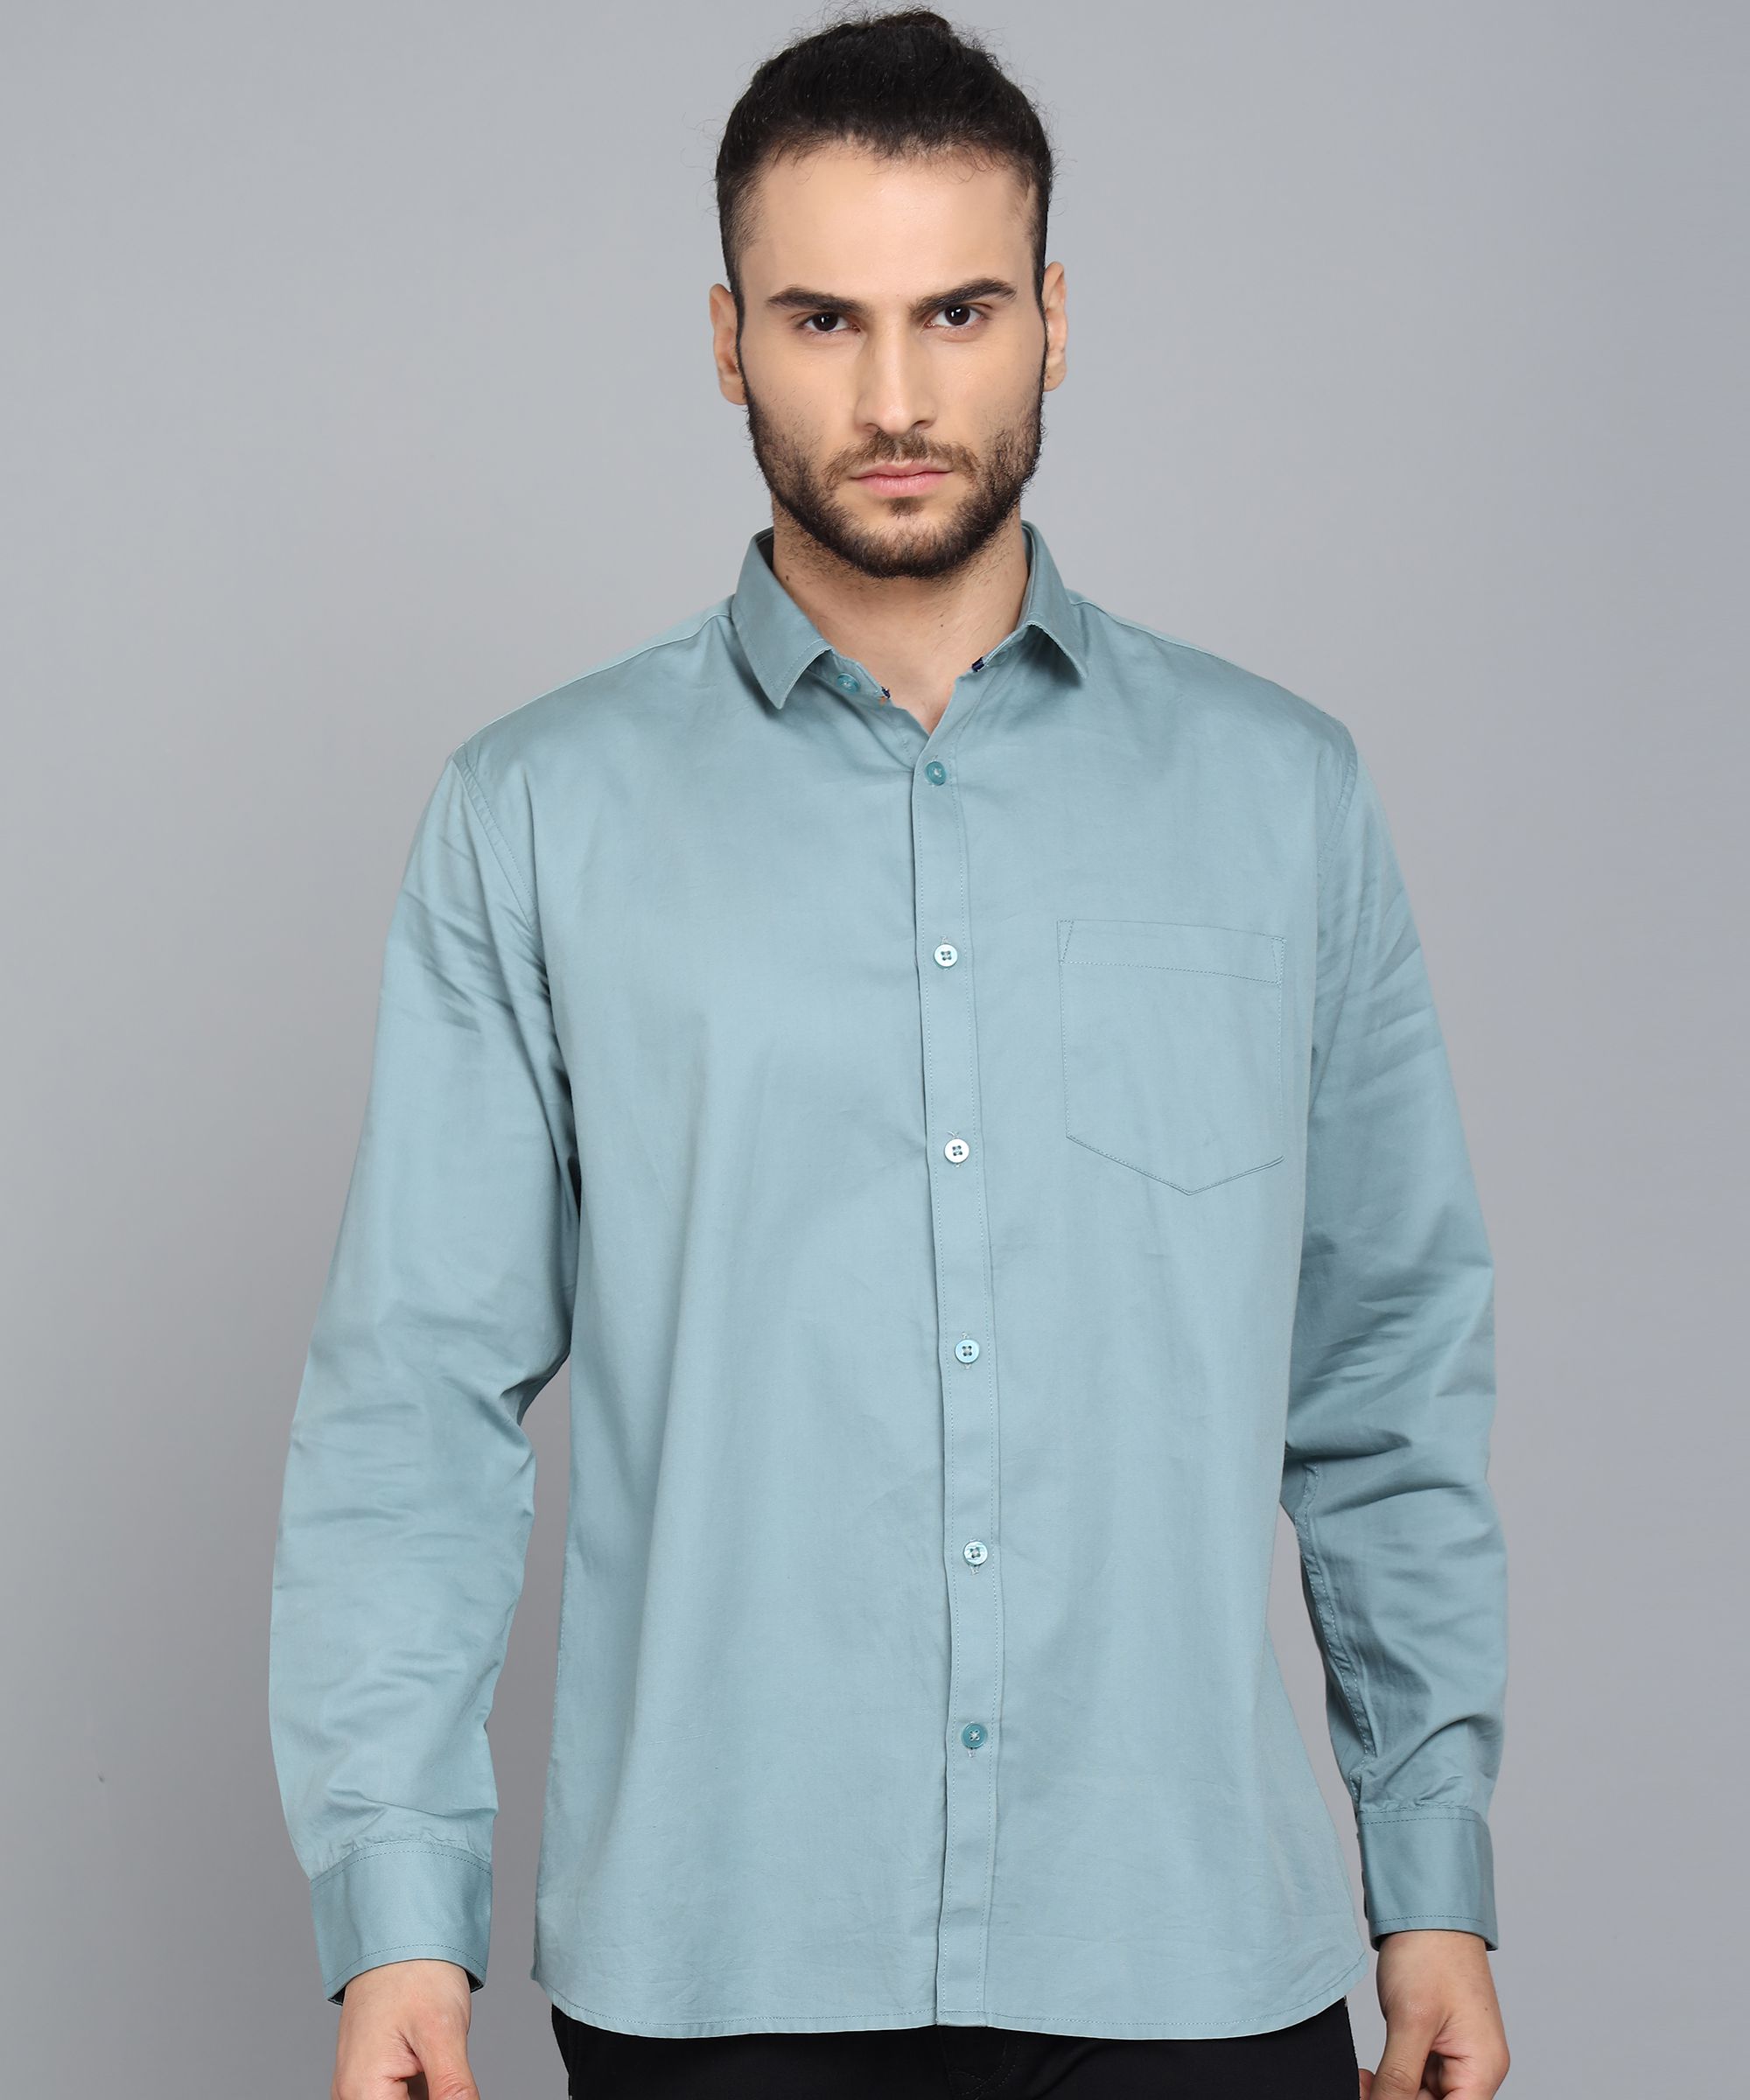     			KIBIT - Light Grey 100% Cotton Slim Fit Men's Casual Shirt ( Pack of 1 )